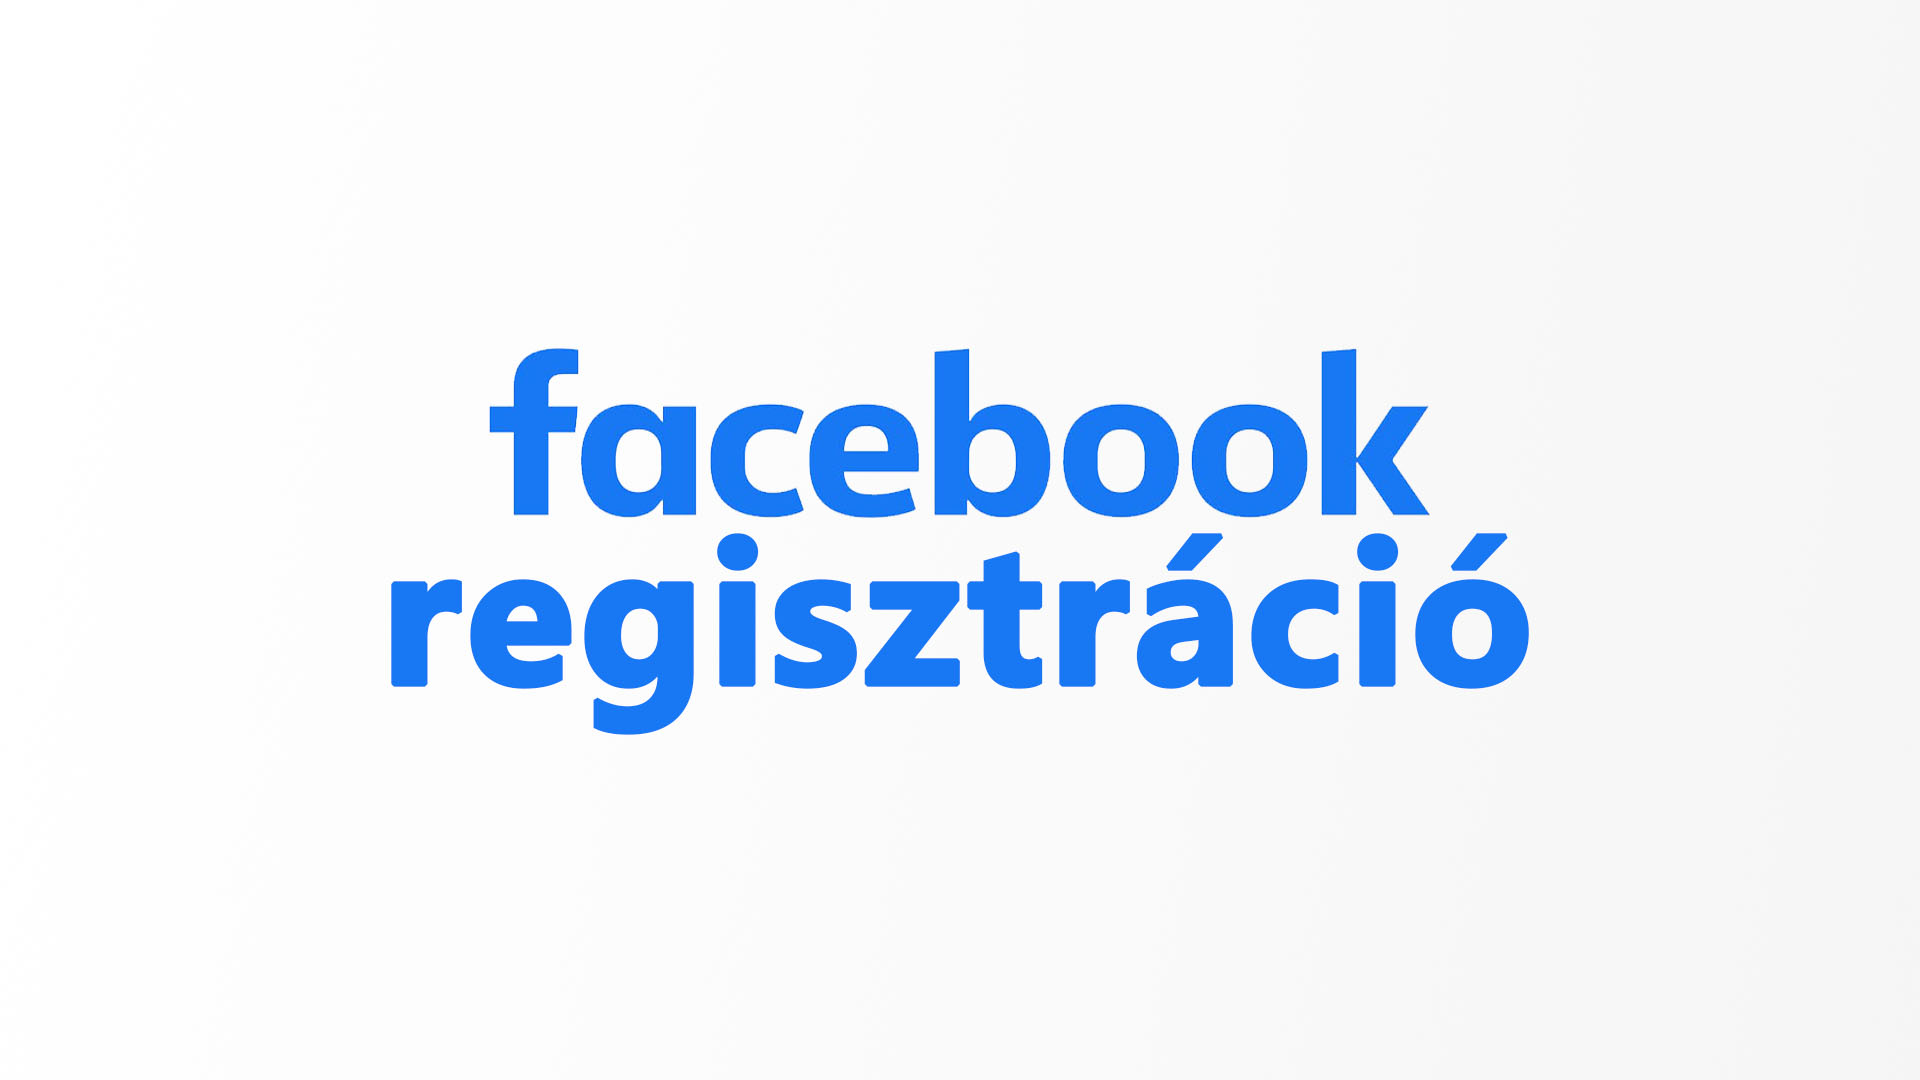 [Facebook regisztráció] - Facebook regisztrálás lépései magyarul – Facebook magyar nyelvű regisztrációs útmutató cikk nyitóképe